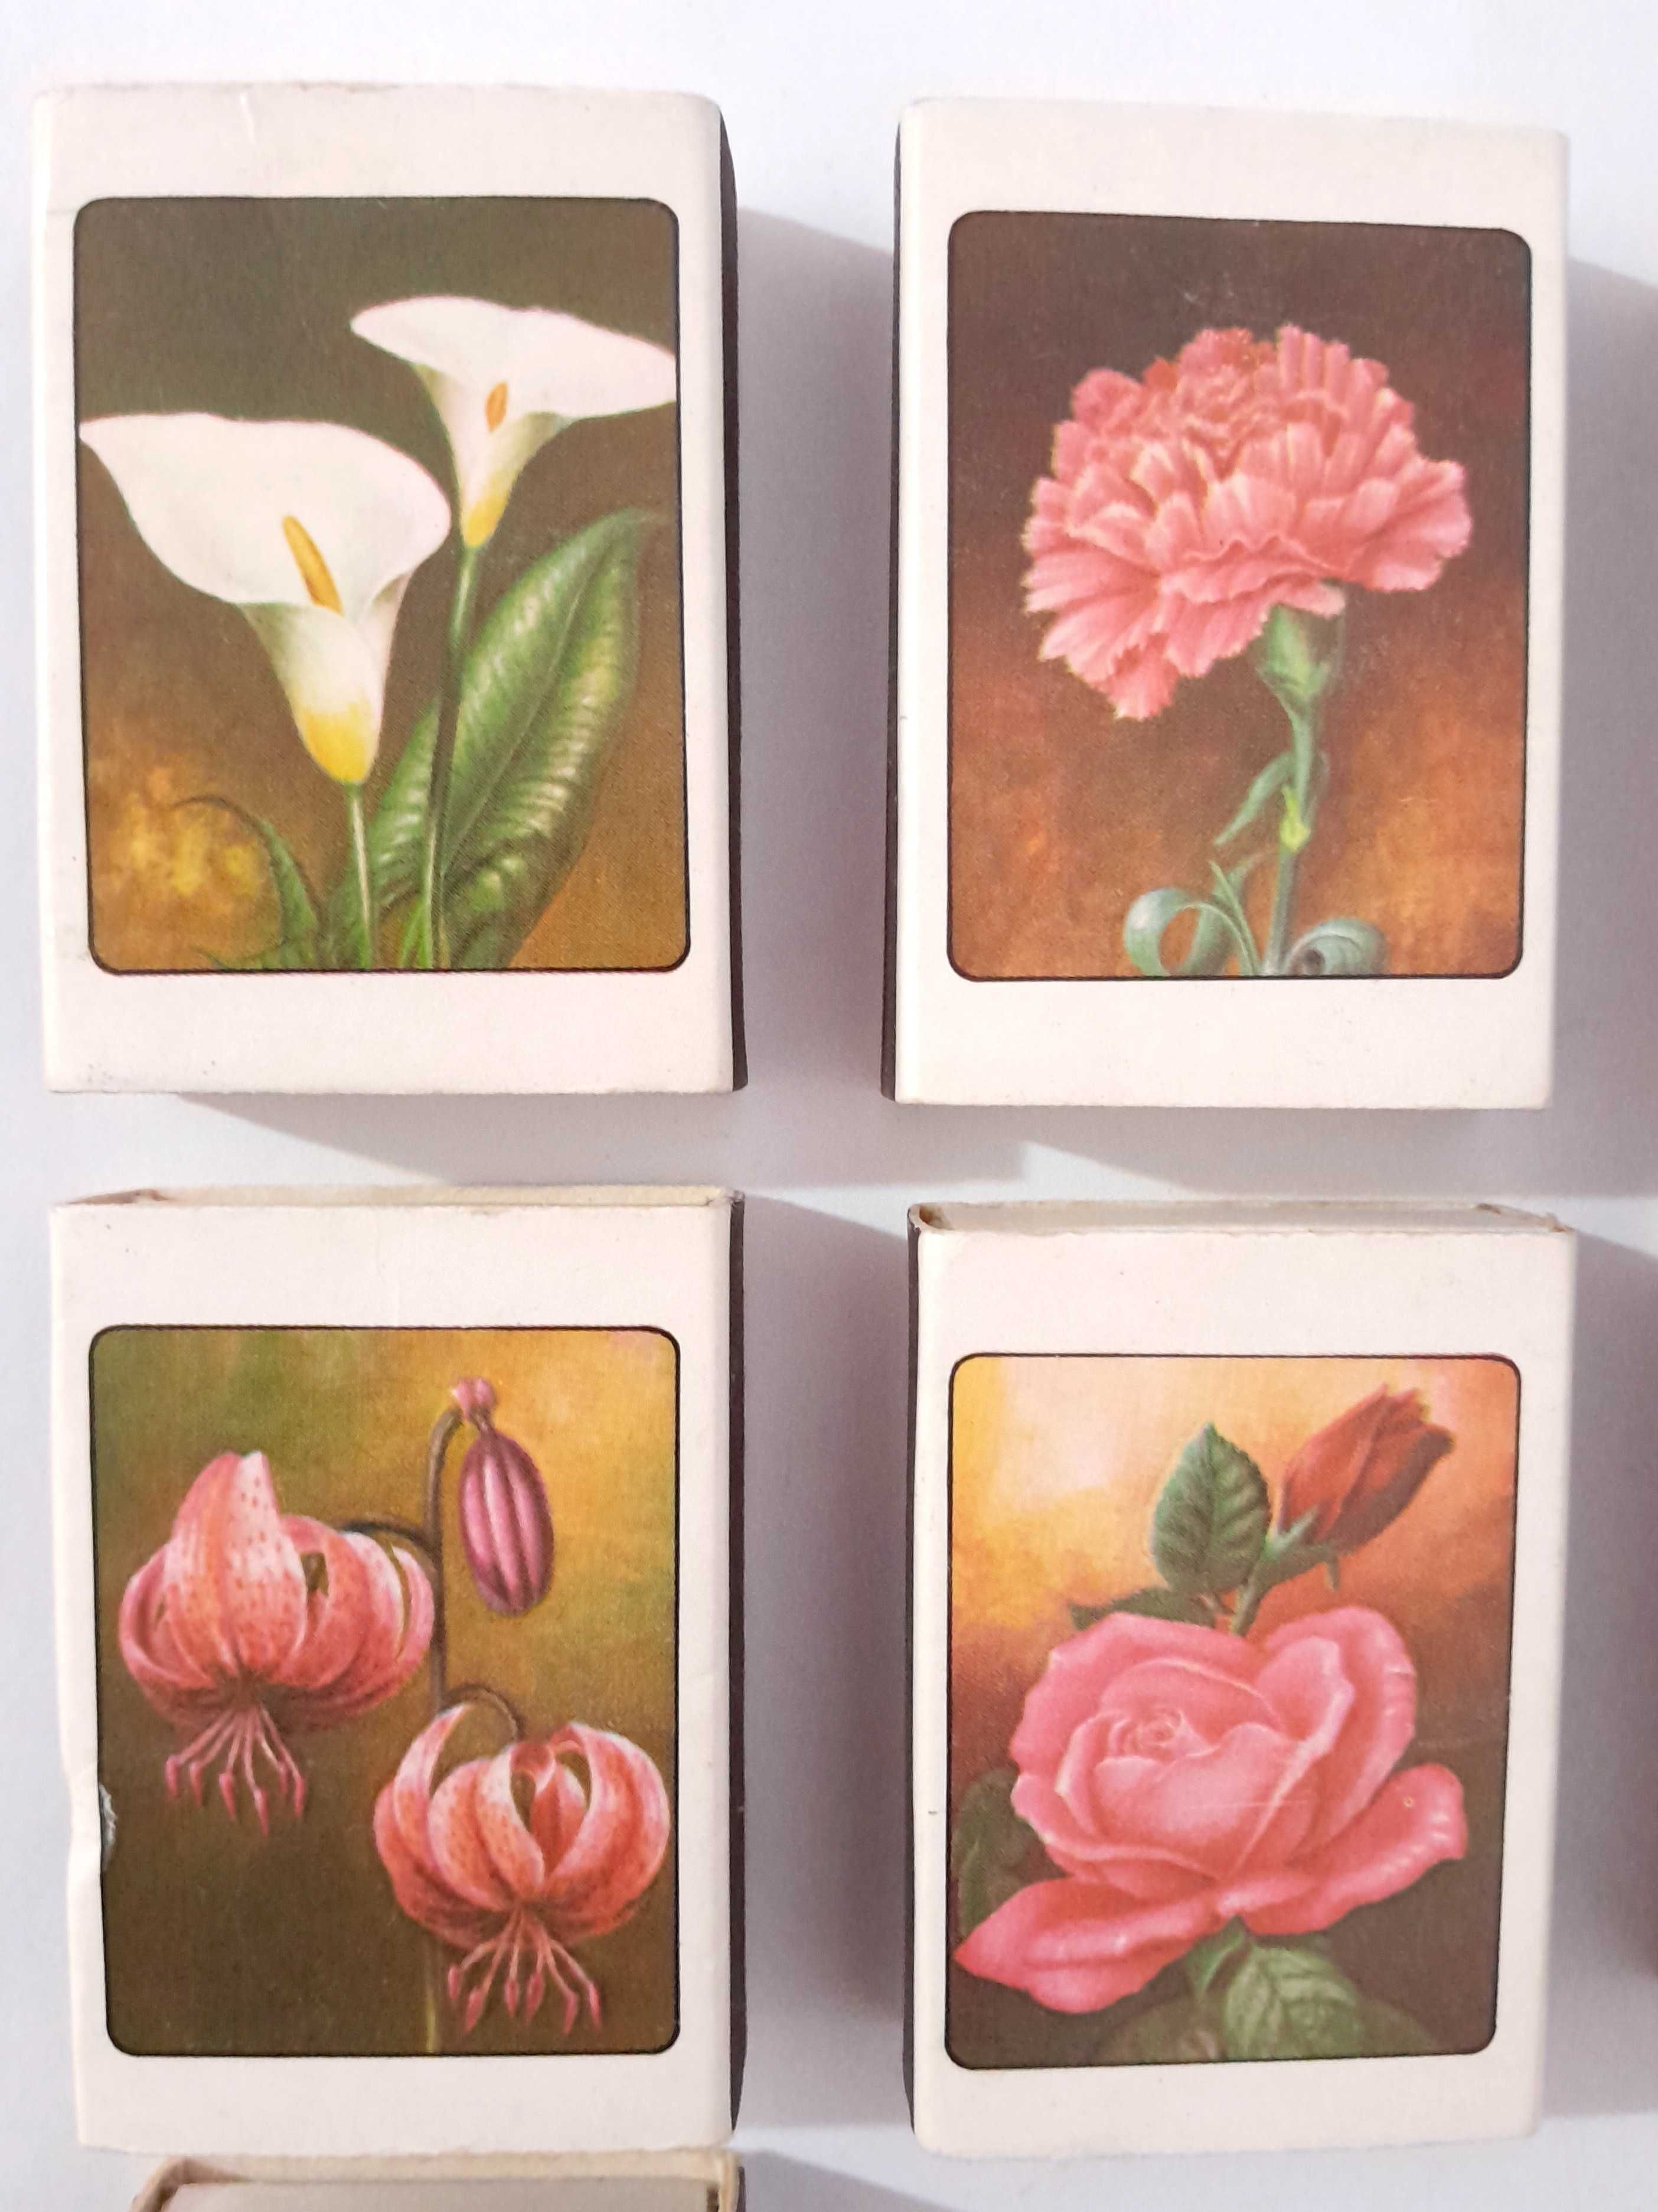 6 Caixas de fósforos antigas com flores